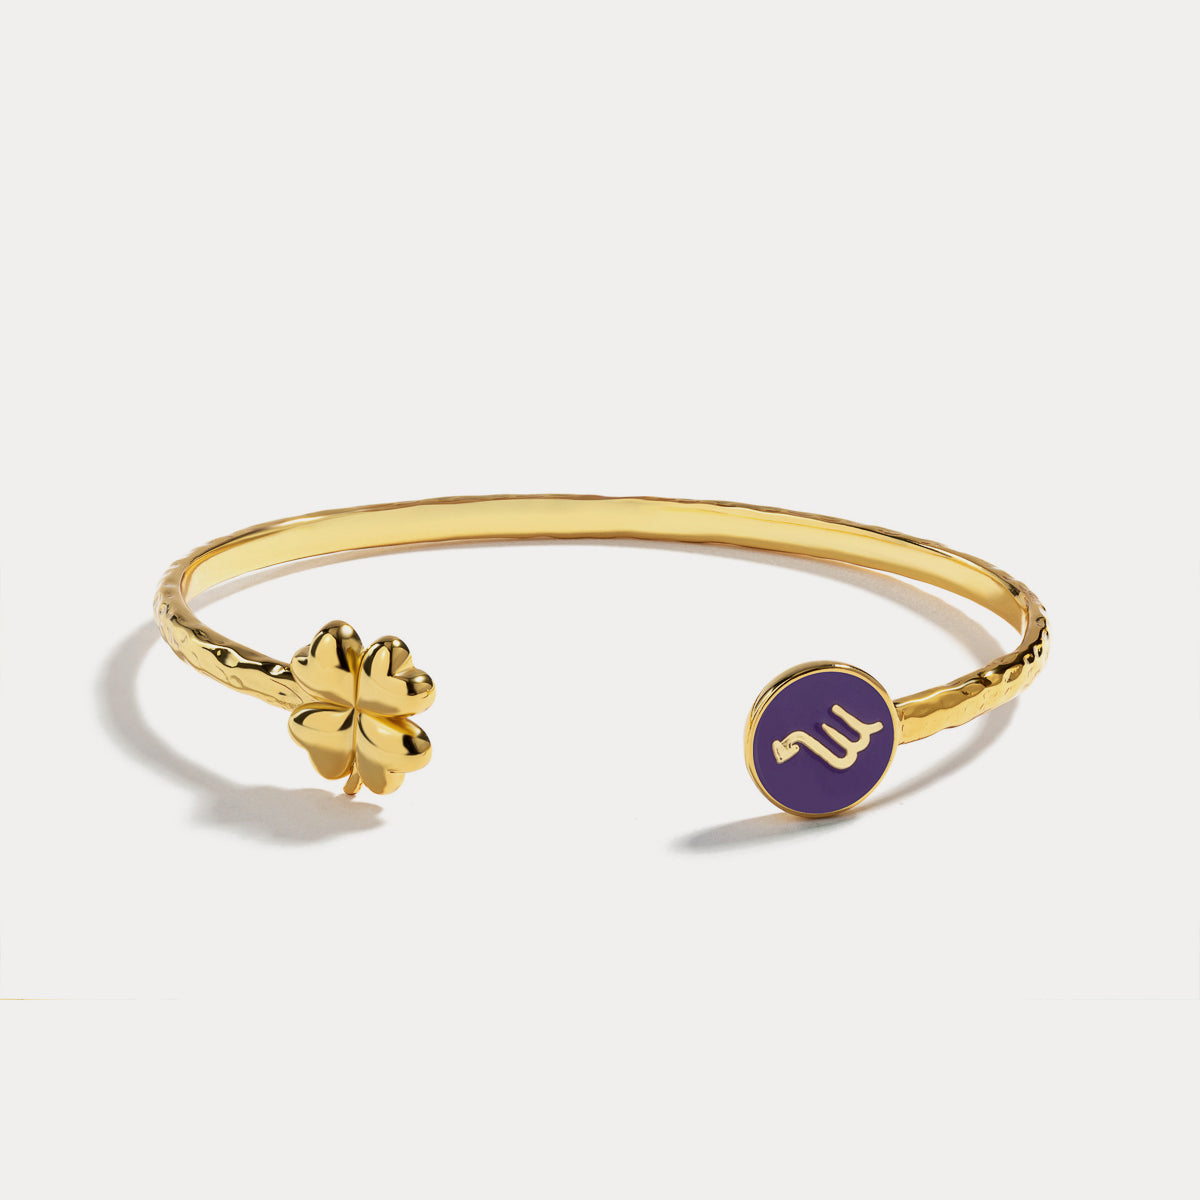 Scorpio astrological sign bracelet